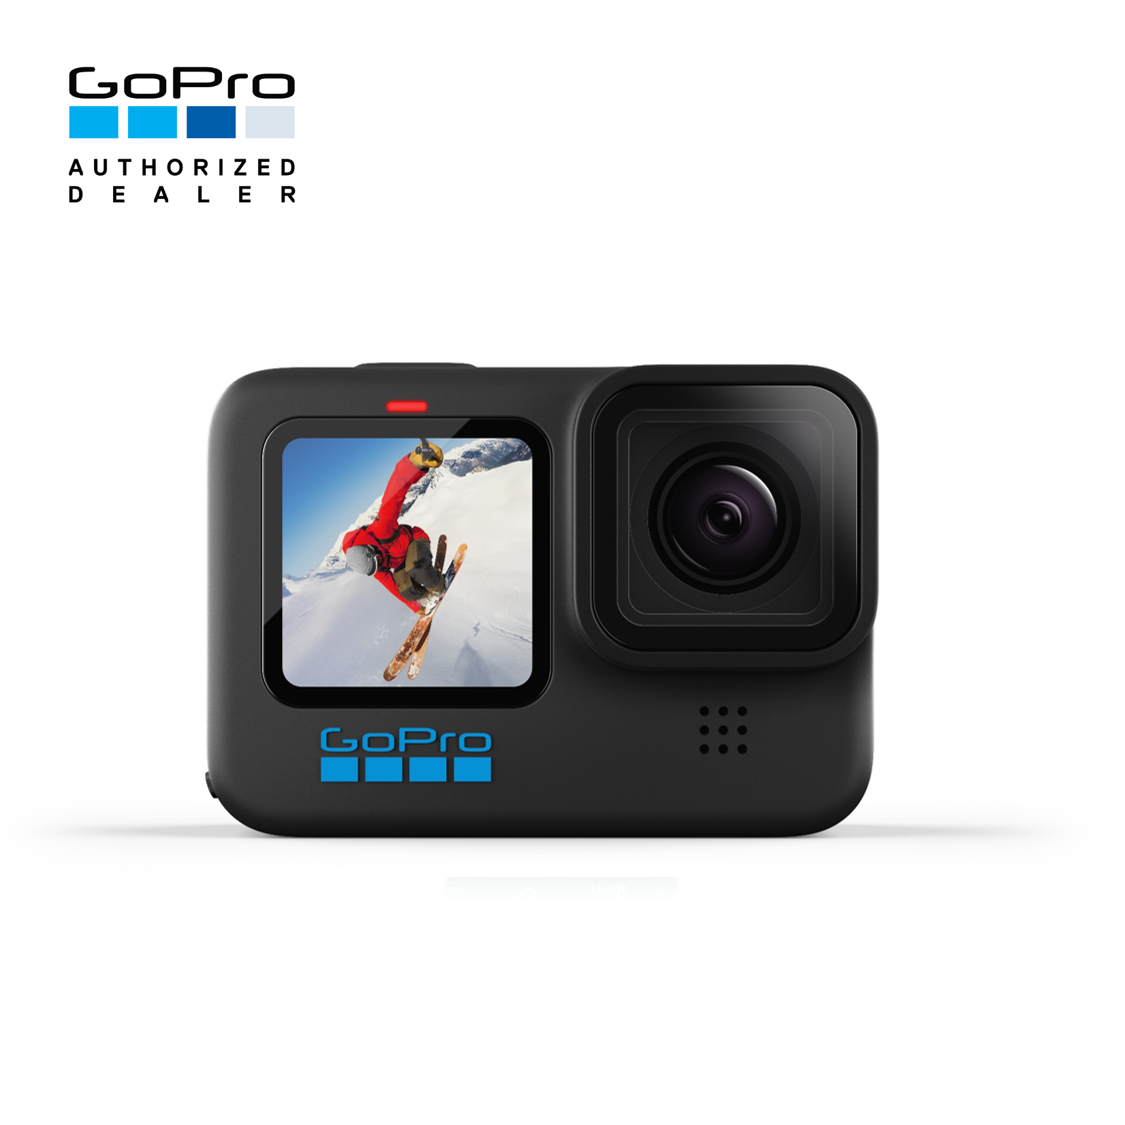 [รับประกันศูนย์แท้ 100% 1 ปีเต็ม] GoPro HERO10 Black กล้อง Action Camera รุ่นใหม่ล่าสุด กันน้ำได้ 10 เมตร ระบบกันสั่น HyperSmooth 4.0 ชิปเซ็ต GP2 รวดเร็วกว่าเดิม